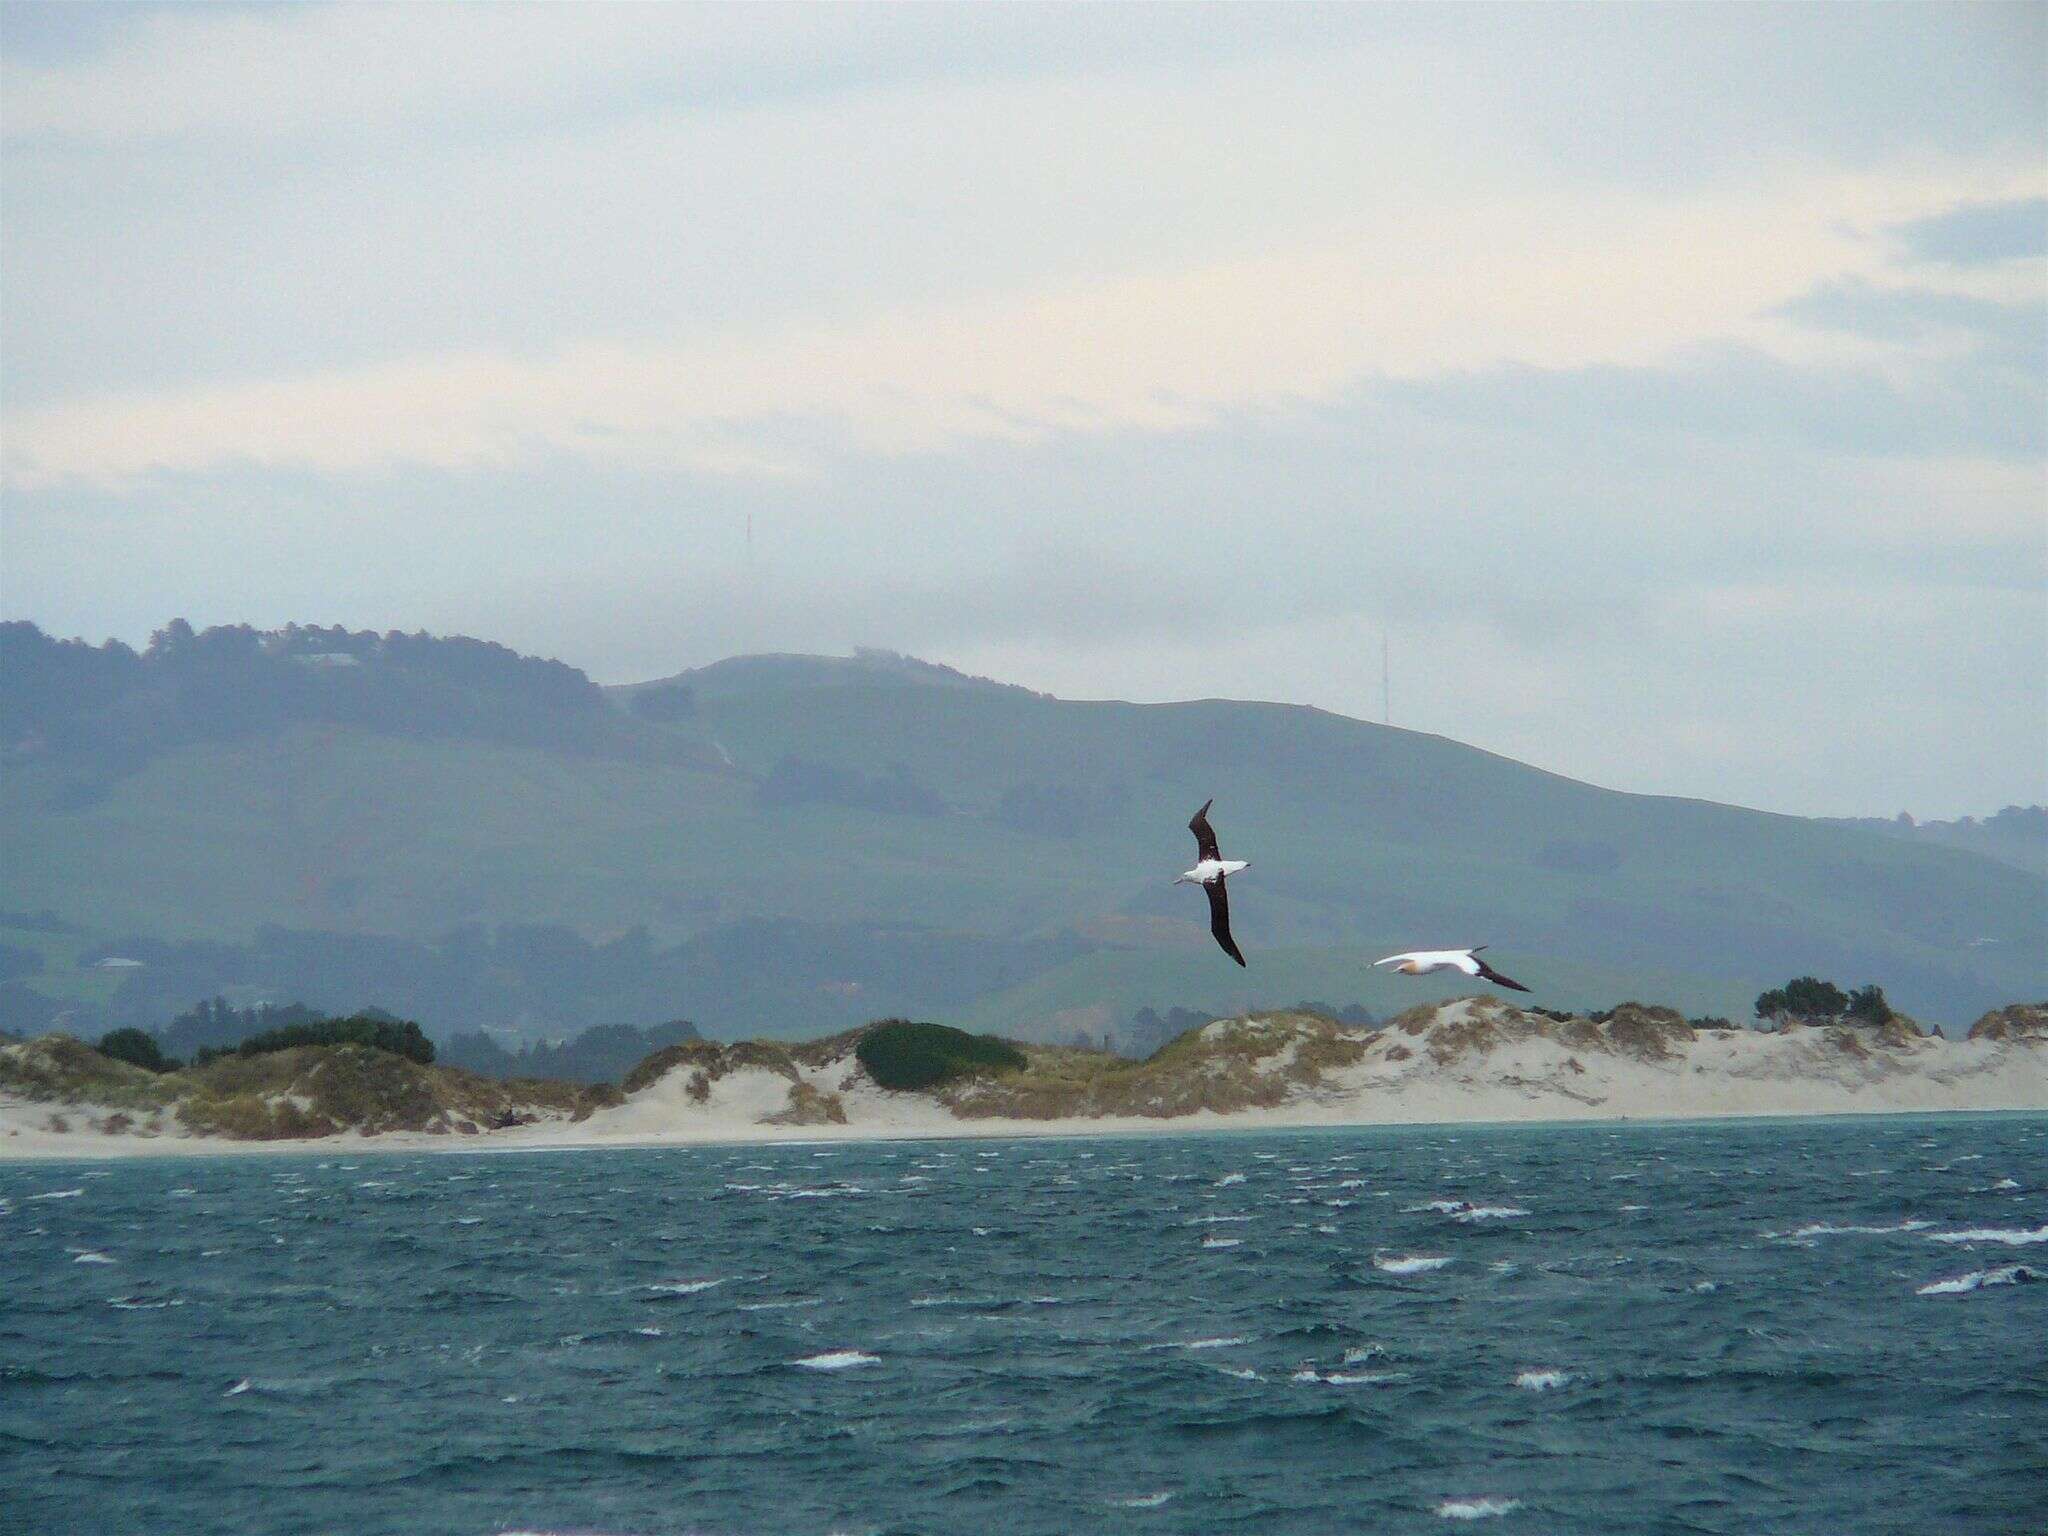 Image of Royal Albatross